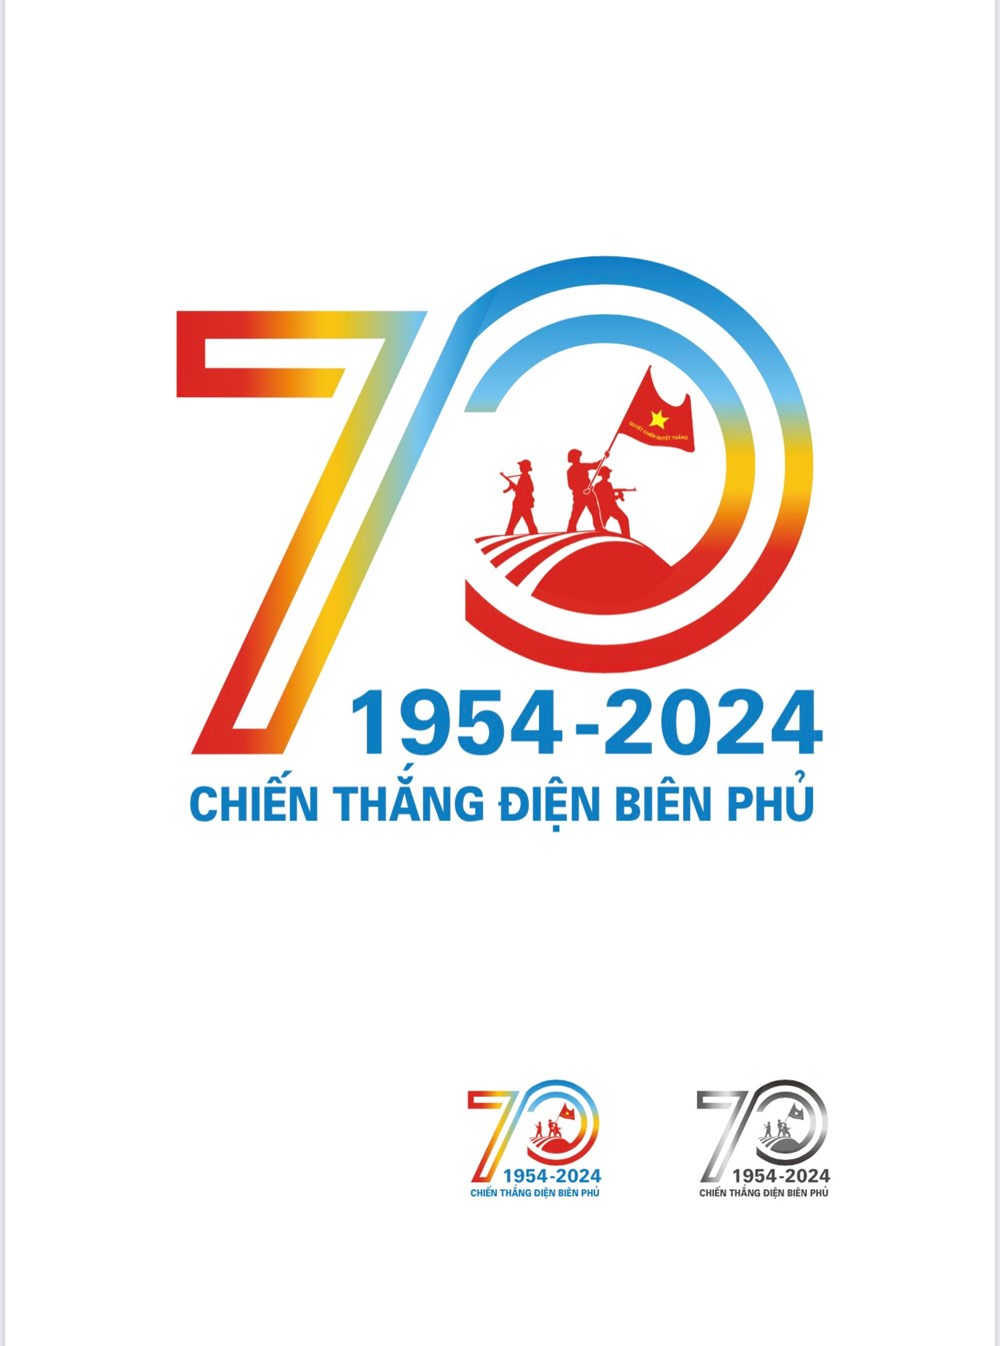 Mẫu logo tuyên truyền kỷ niệm 70 năm Chiến thắng Điện Biên Phủ - ảnh 1